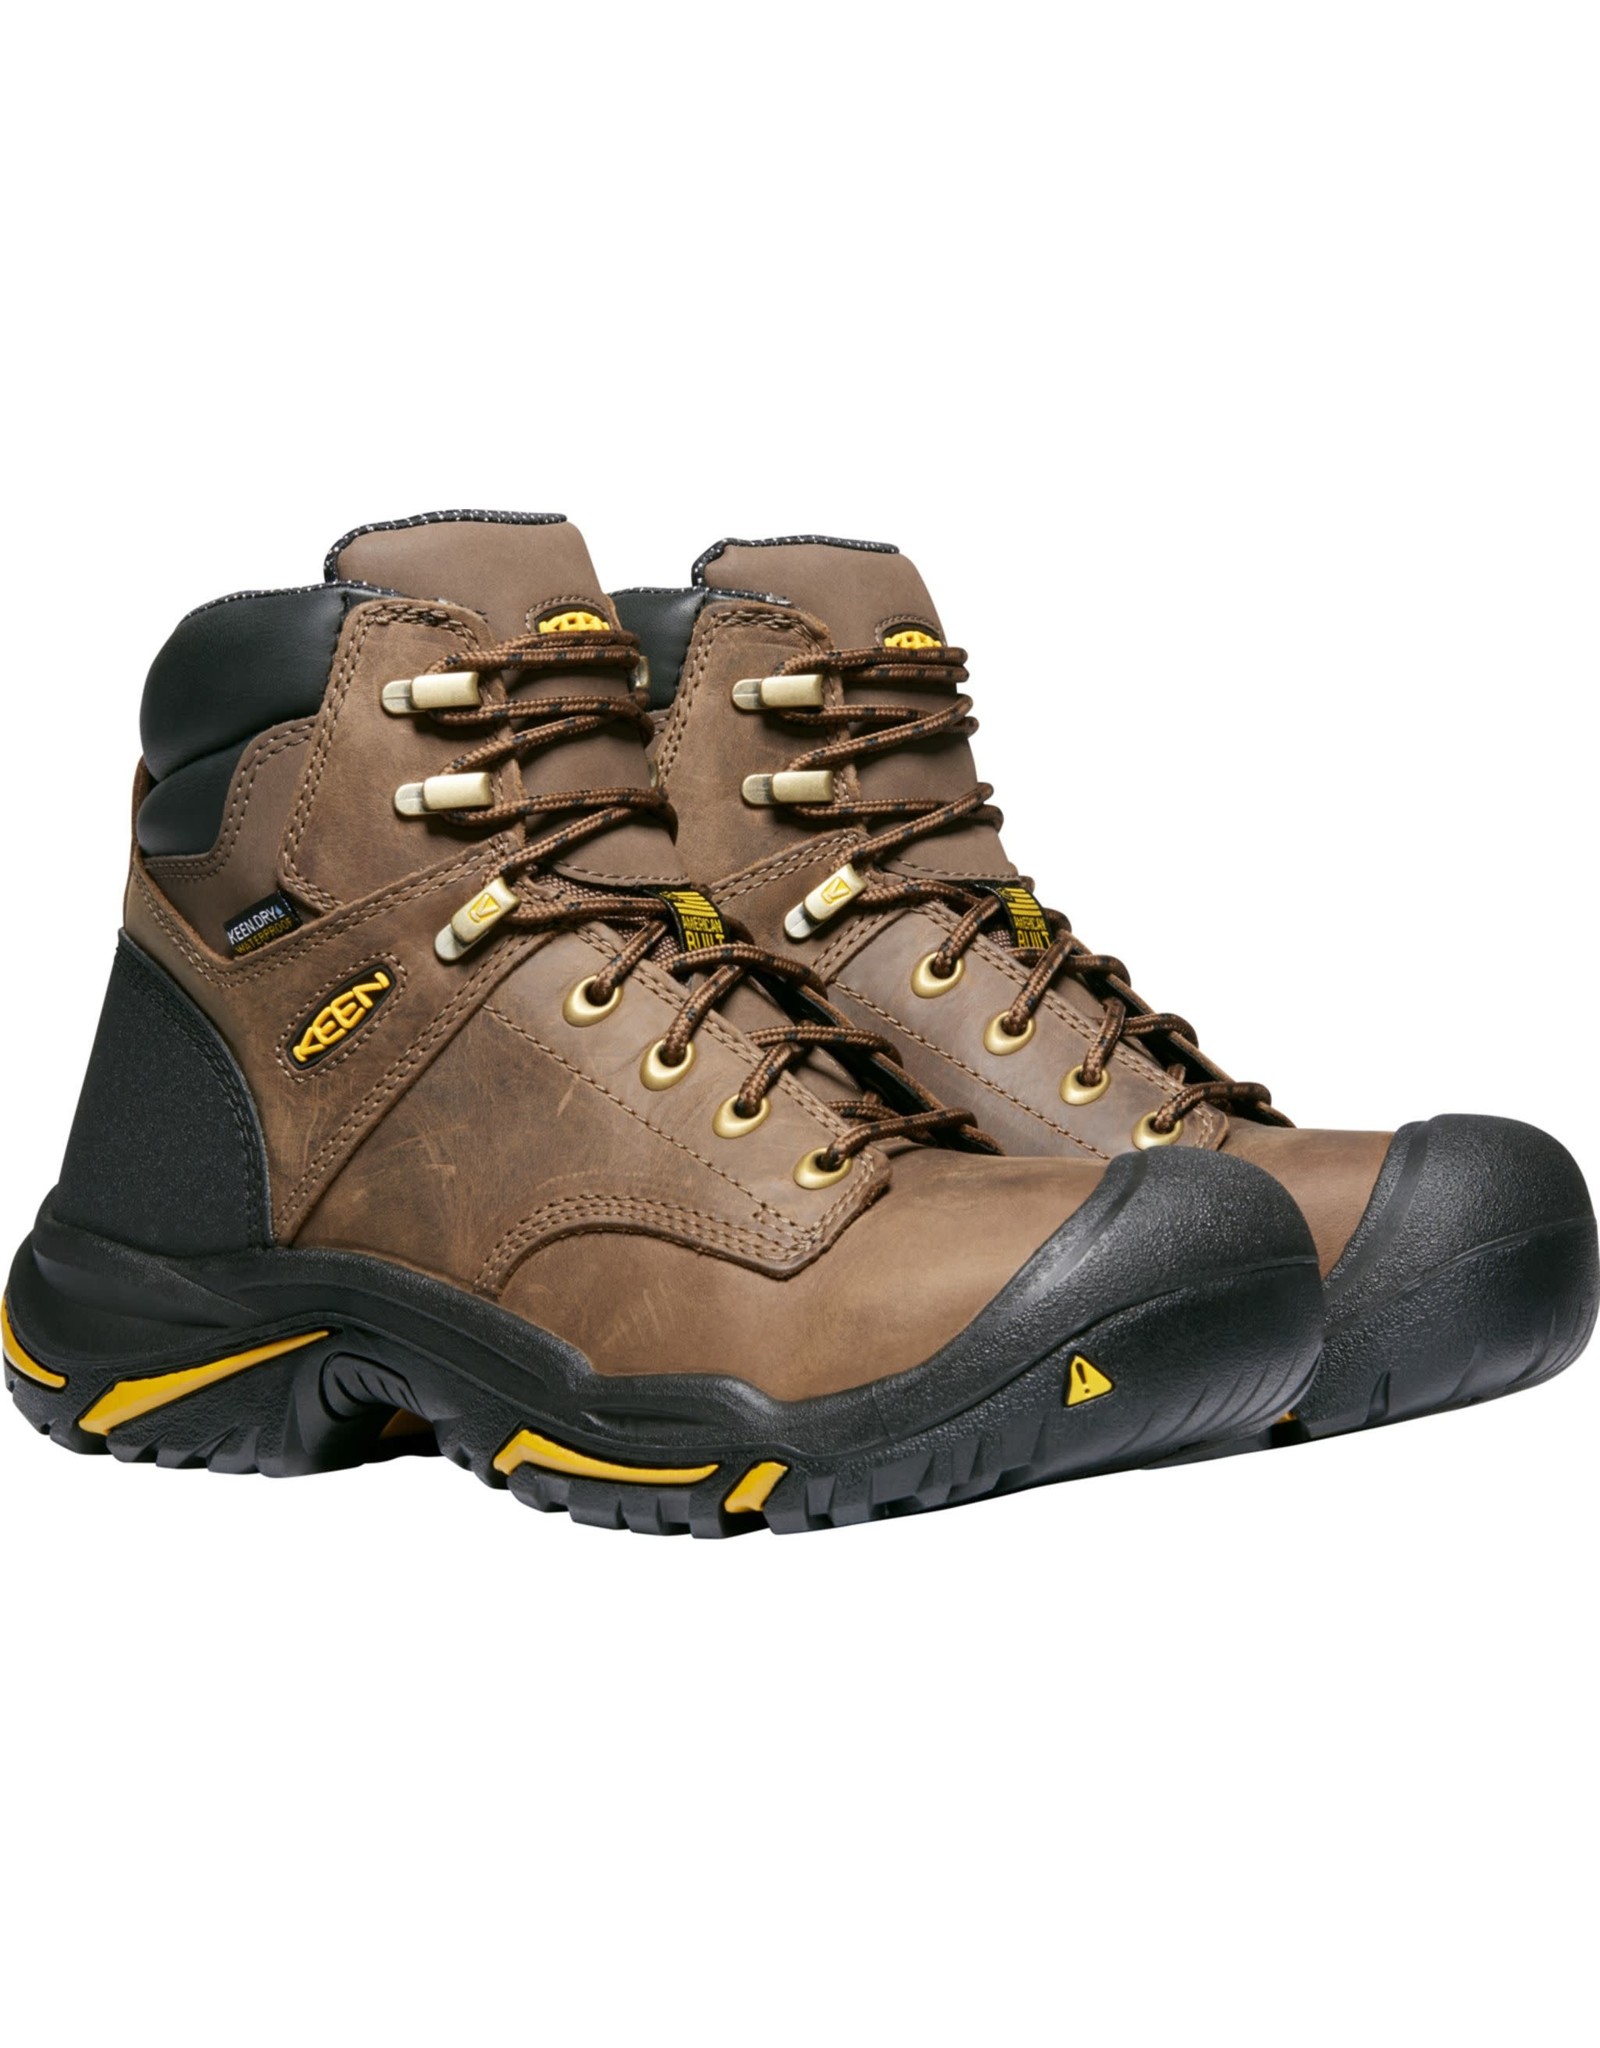 Keen Men's Mt. Vernon 6” Waterproof Steel Toe 1013258 Work Boots